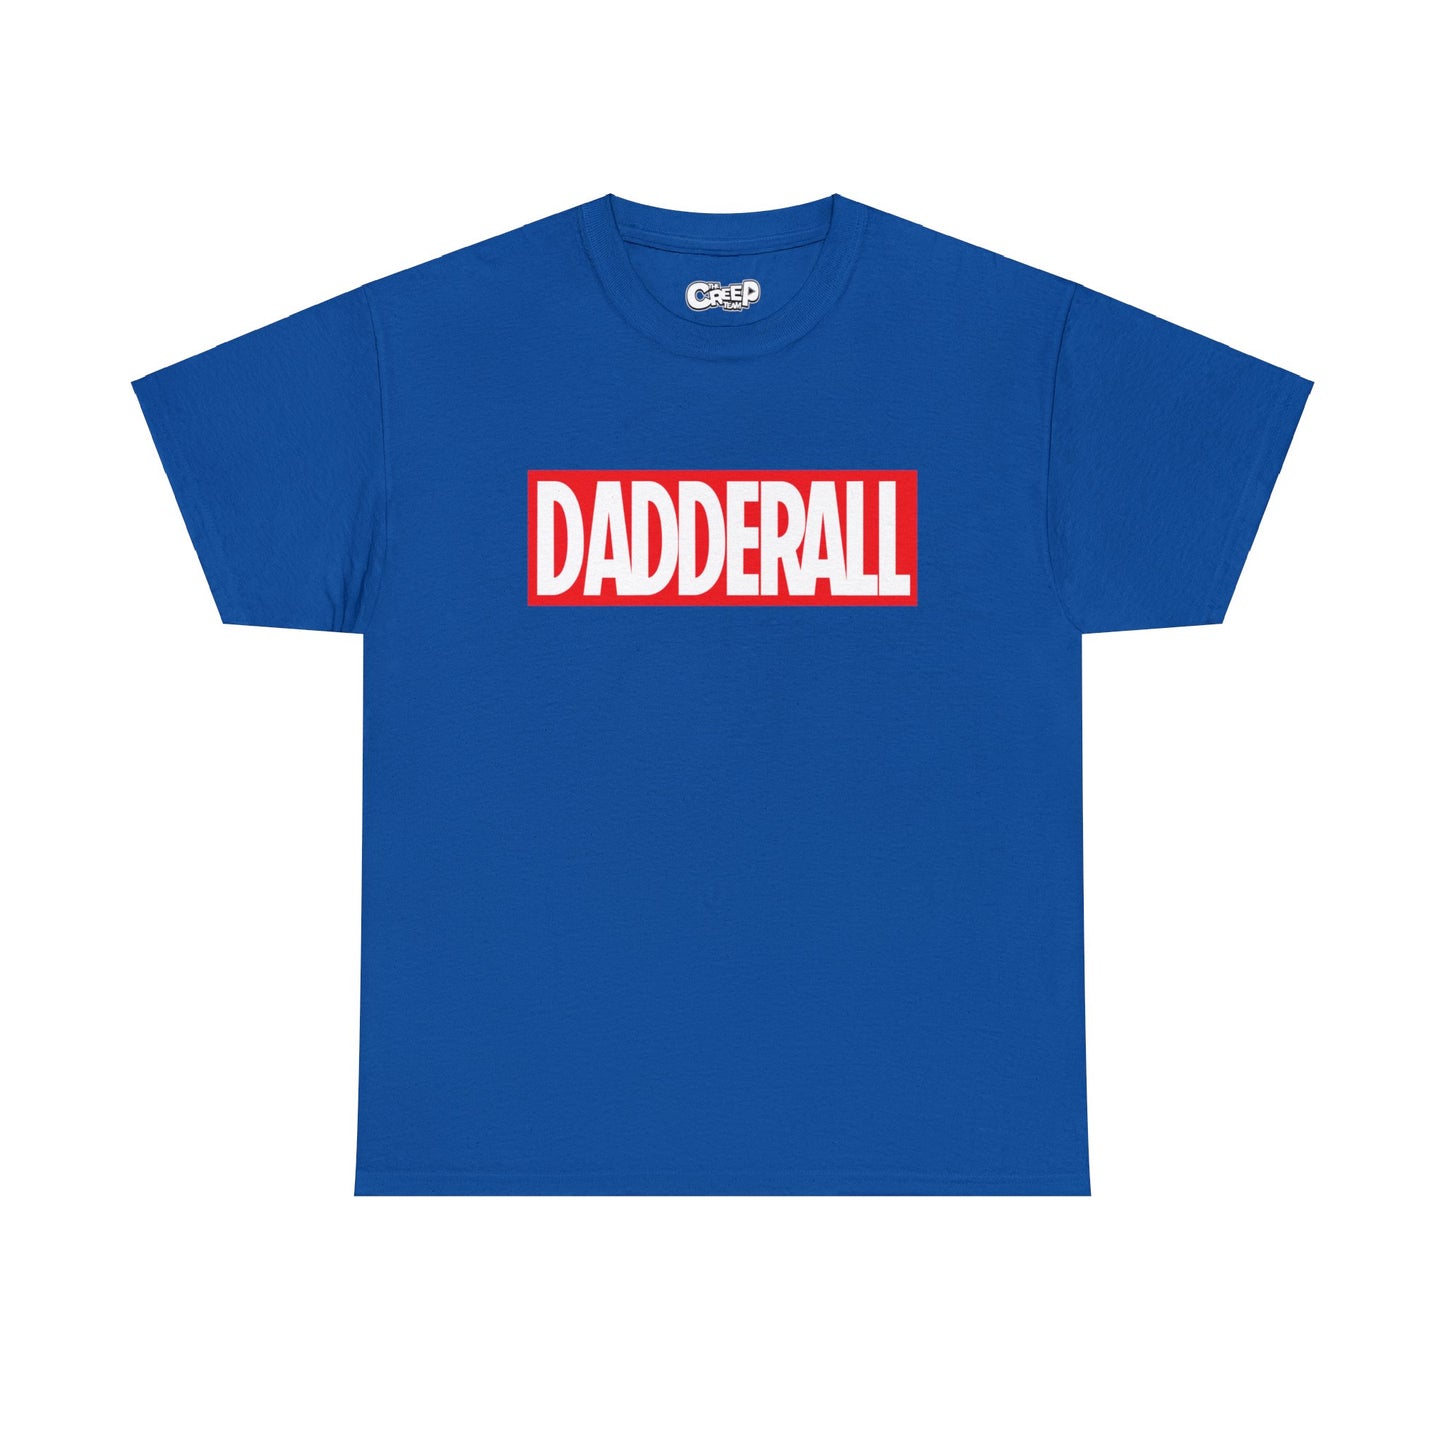 Marvelous Dadderall T-Shirt